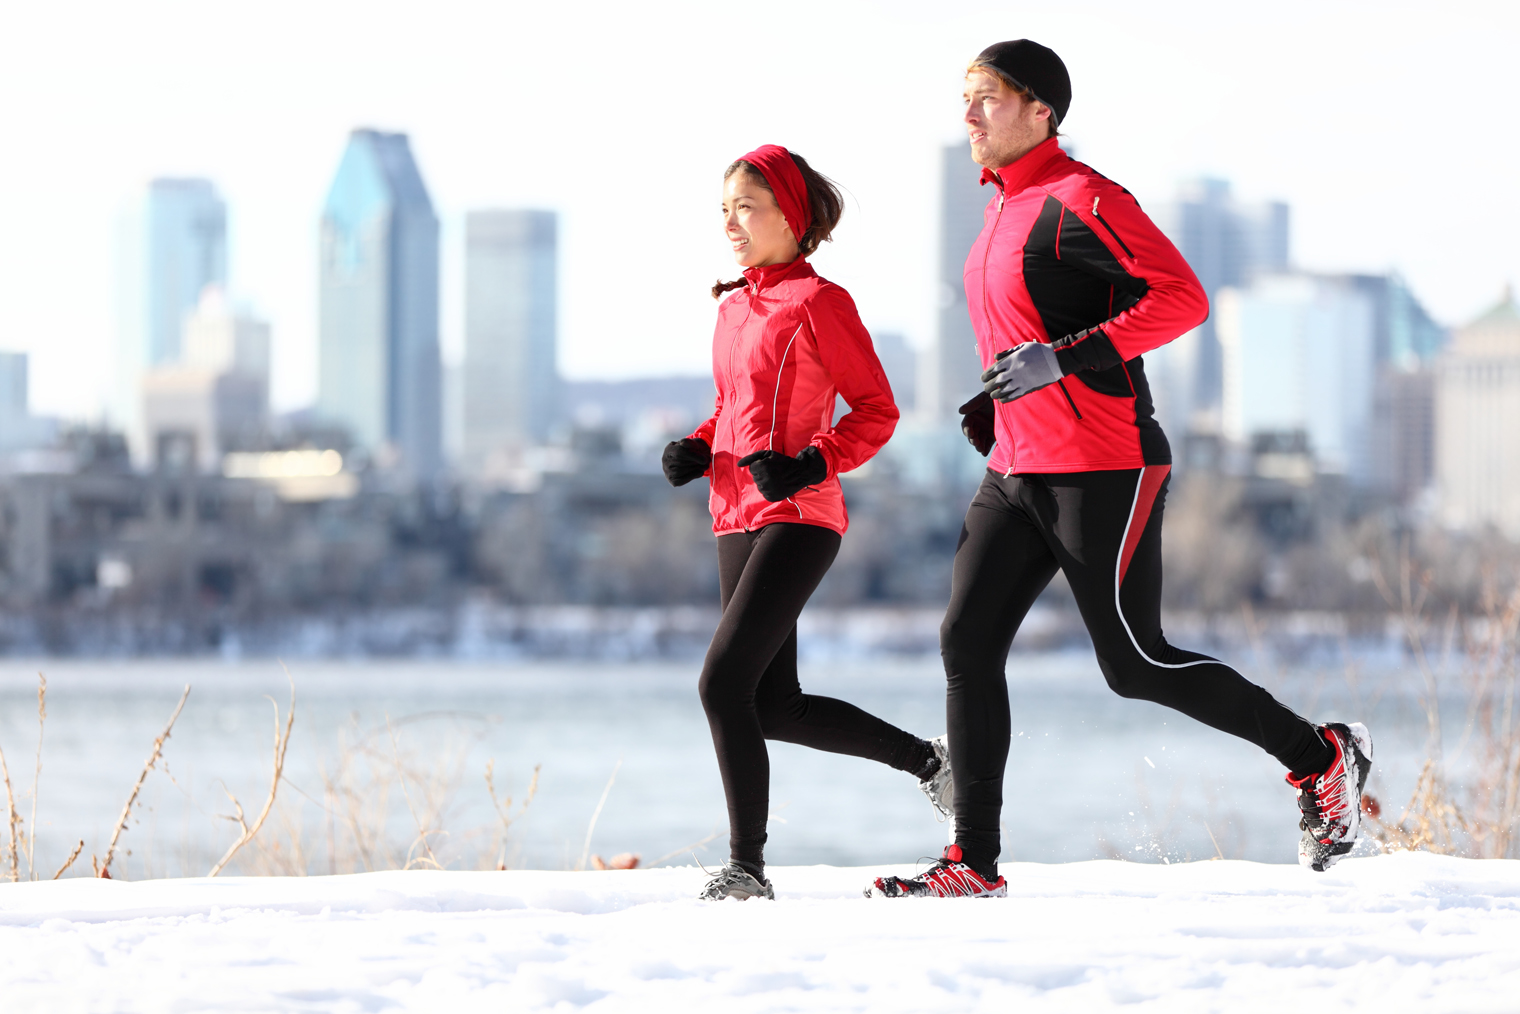 Correr en invierno: equiparse bien